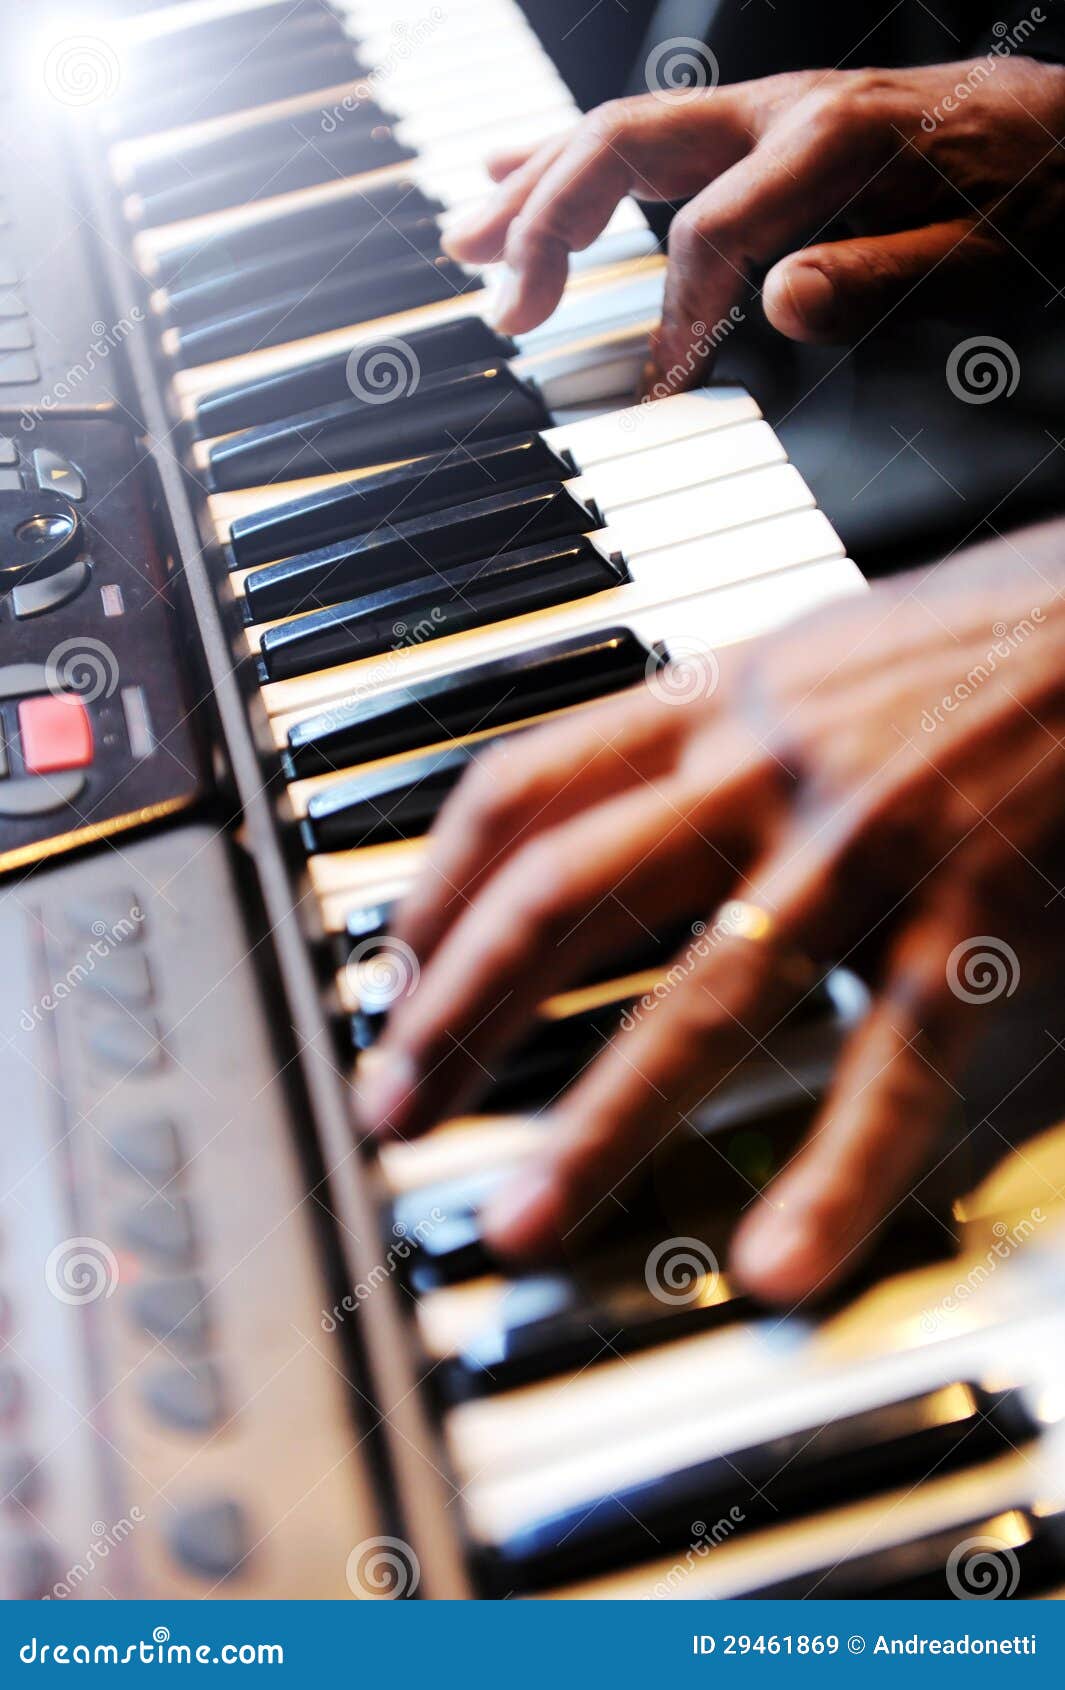 Pianist die een piano spelen. Handen van een pianist die op een elektrisch pianotoetsenbord spelen met ondiepe dof en lichte gloed